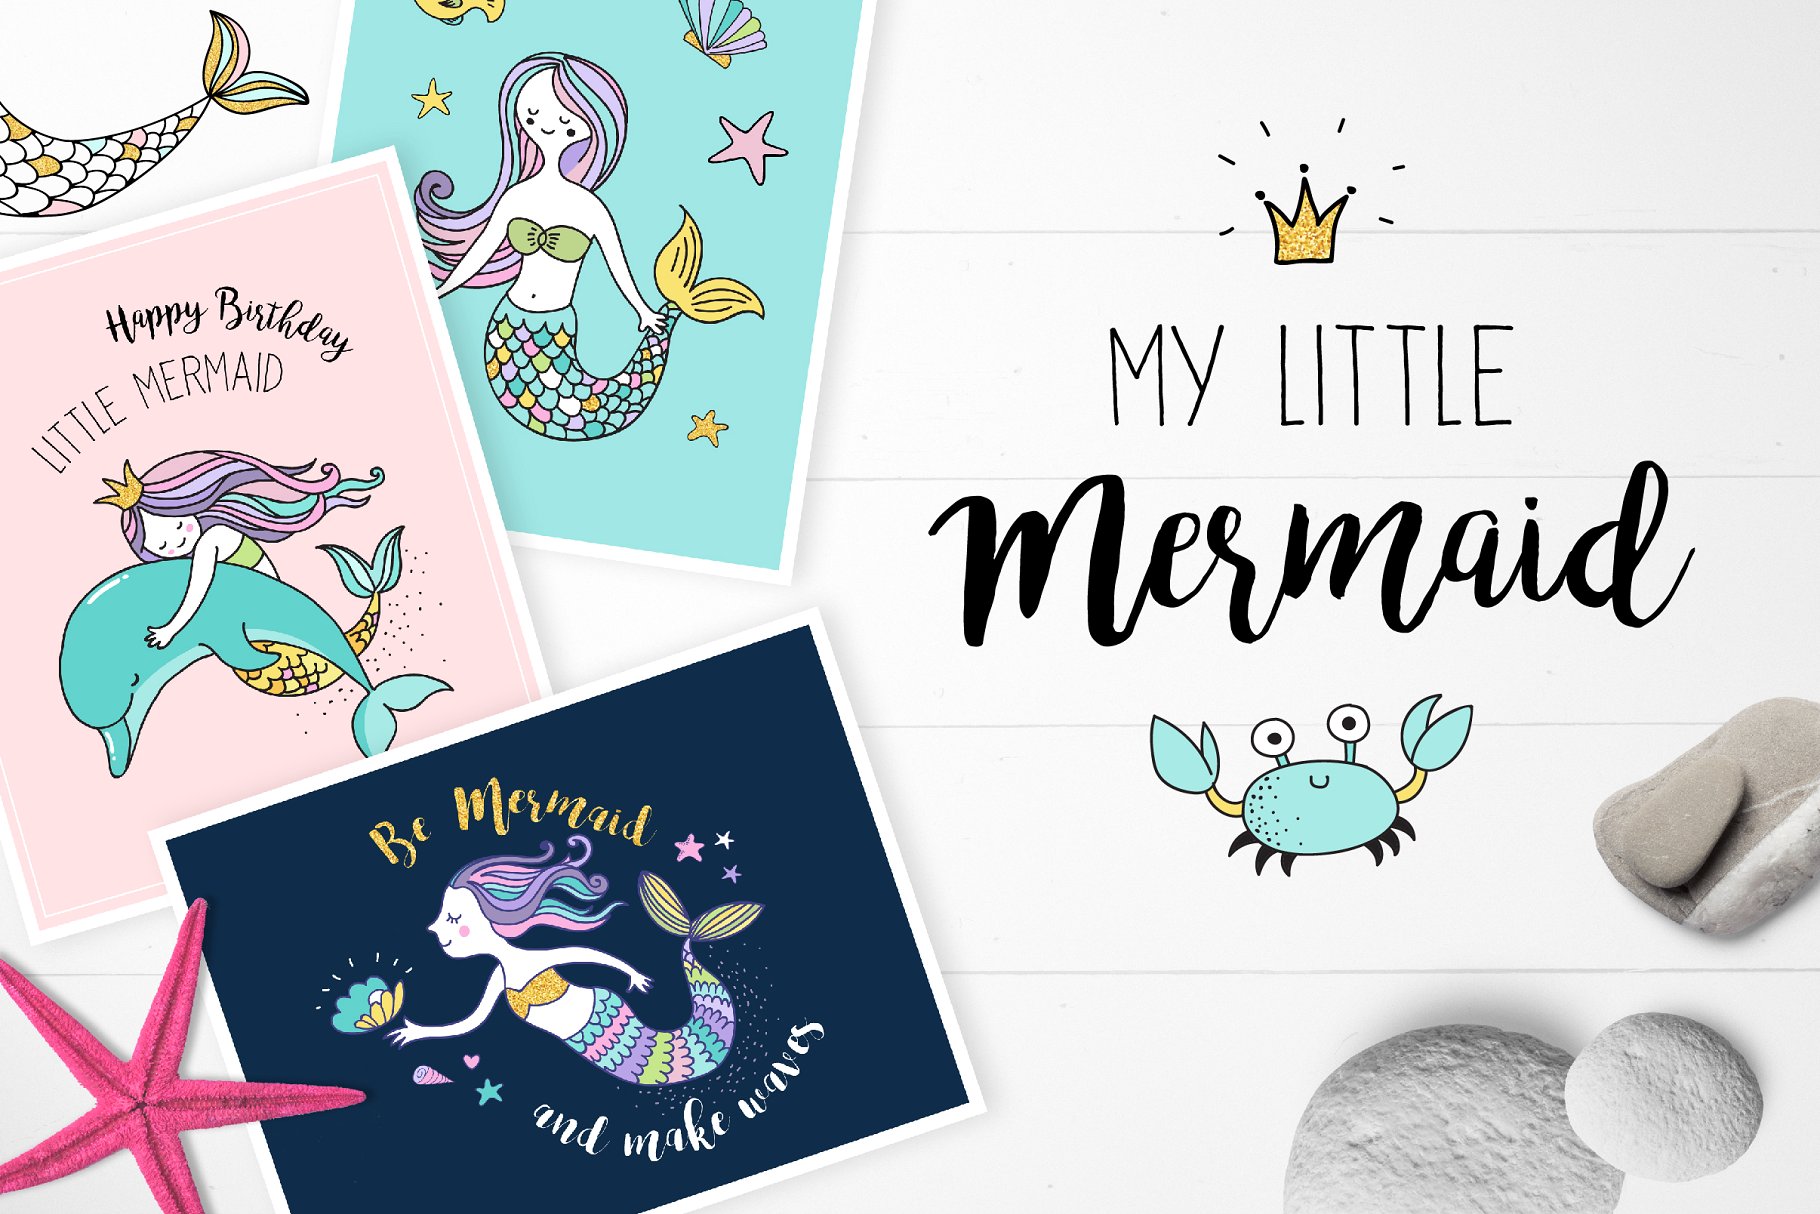 小美人鱼与海洋生物元素及贺卡模板 Little Mermaid – under the sea set插图